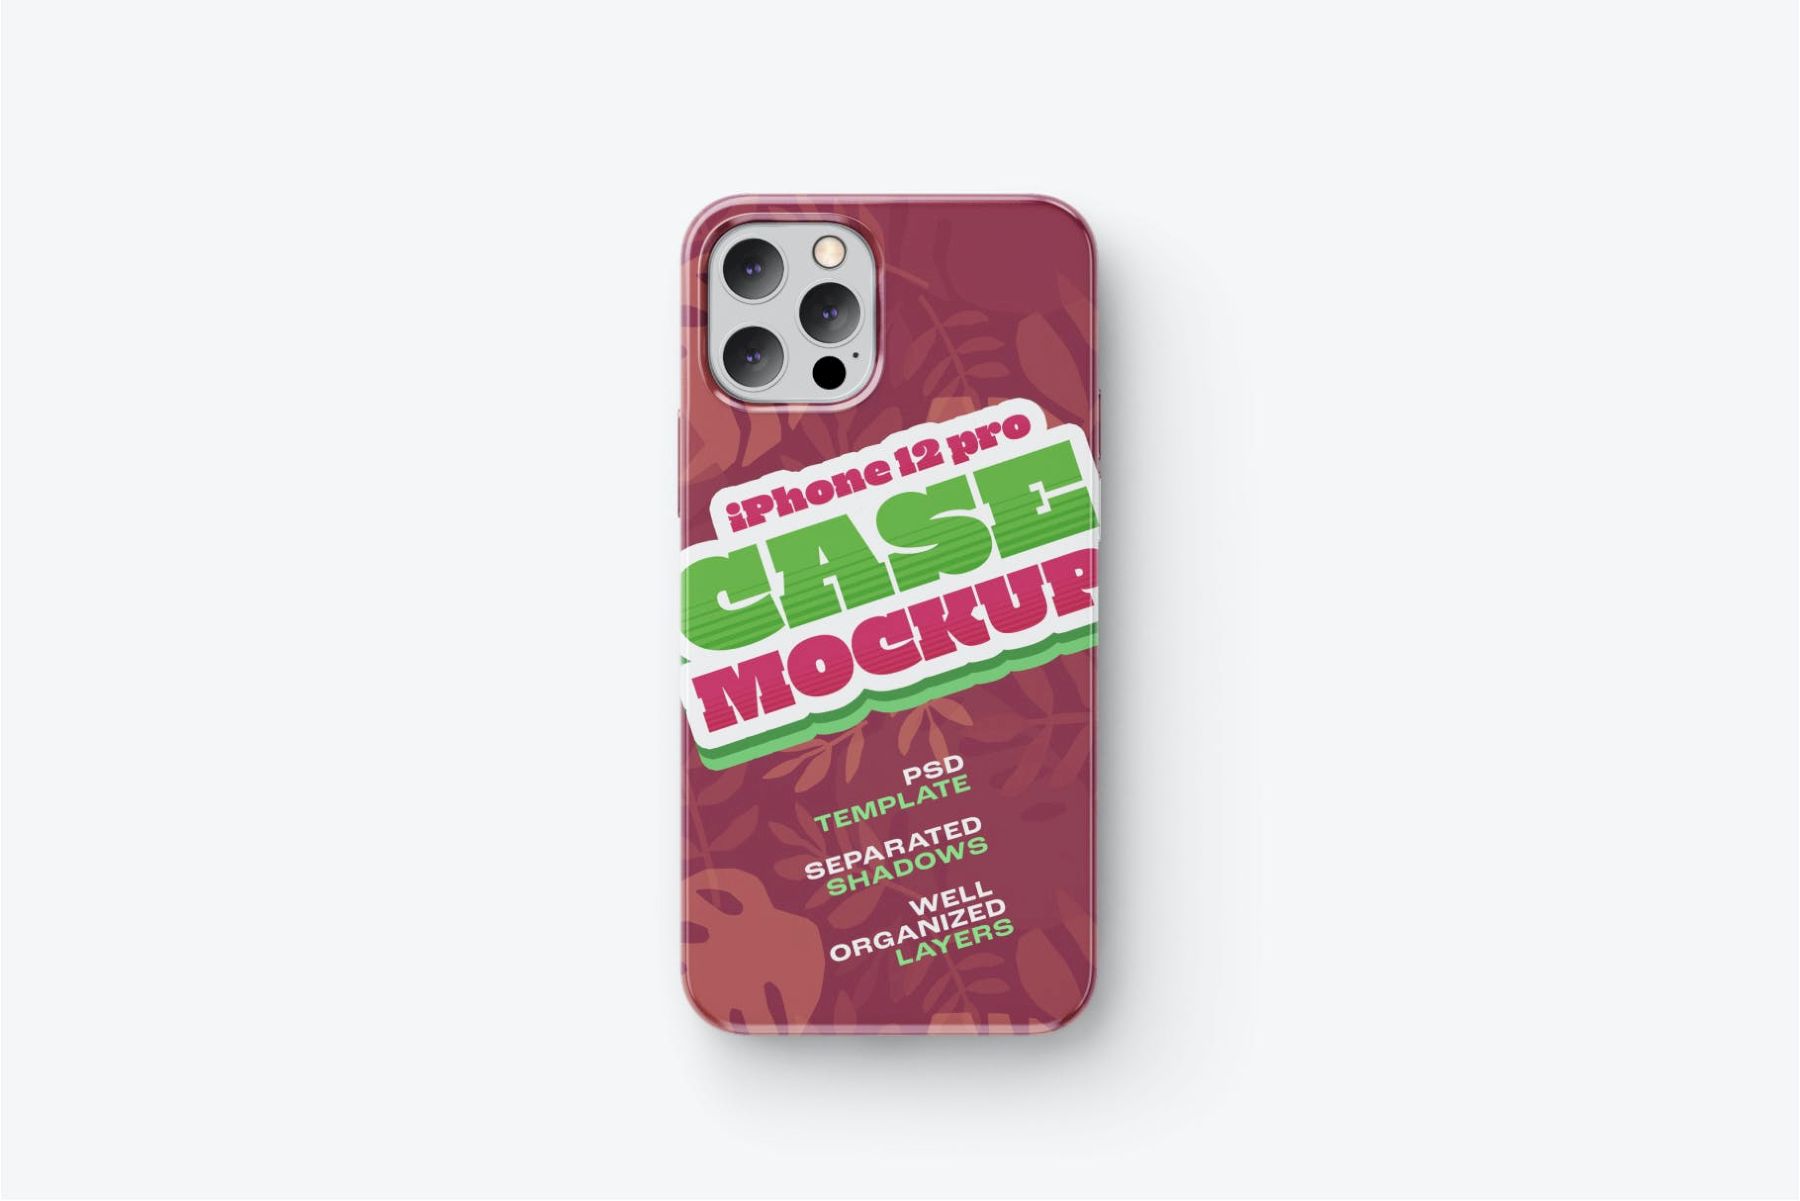 iPhone 12 Pro 手机壳样机套装 iPhone 12 Pro Case Mockup Set插图9